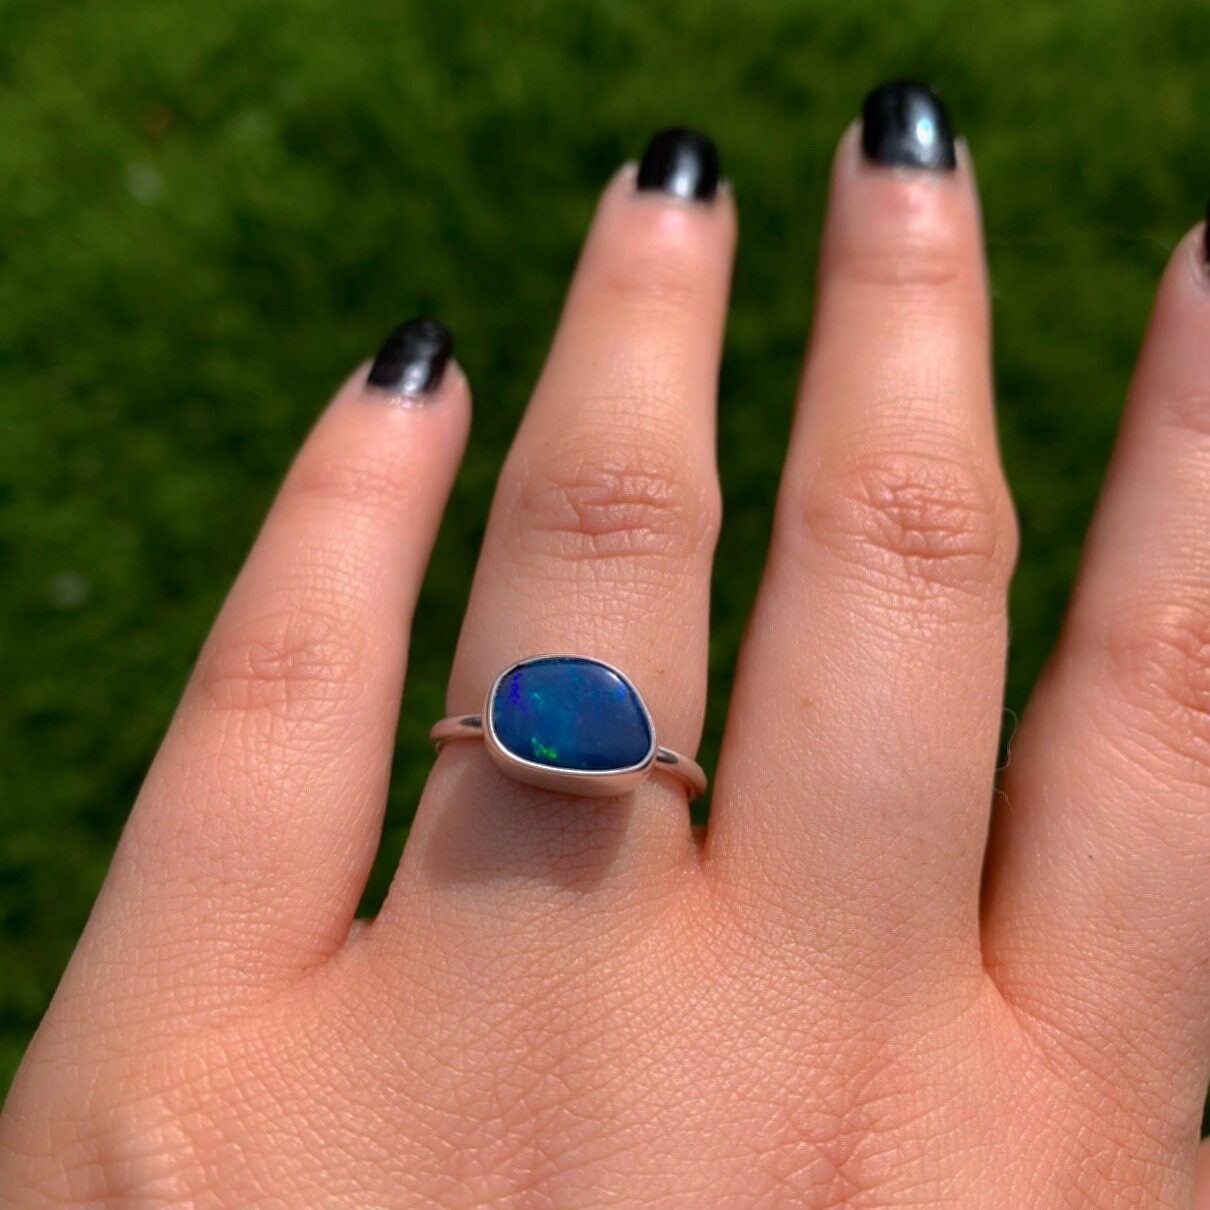 Australian Opal Ring - Size 6 - Sterling Silver - Lightning Ridge Opal Ring - Dainty Blue Opal Jewelry - OOAK Australian Opal Doublet Ring